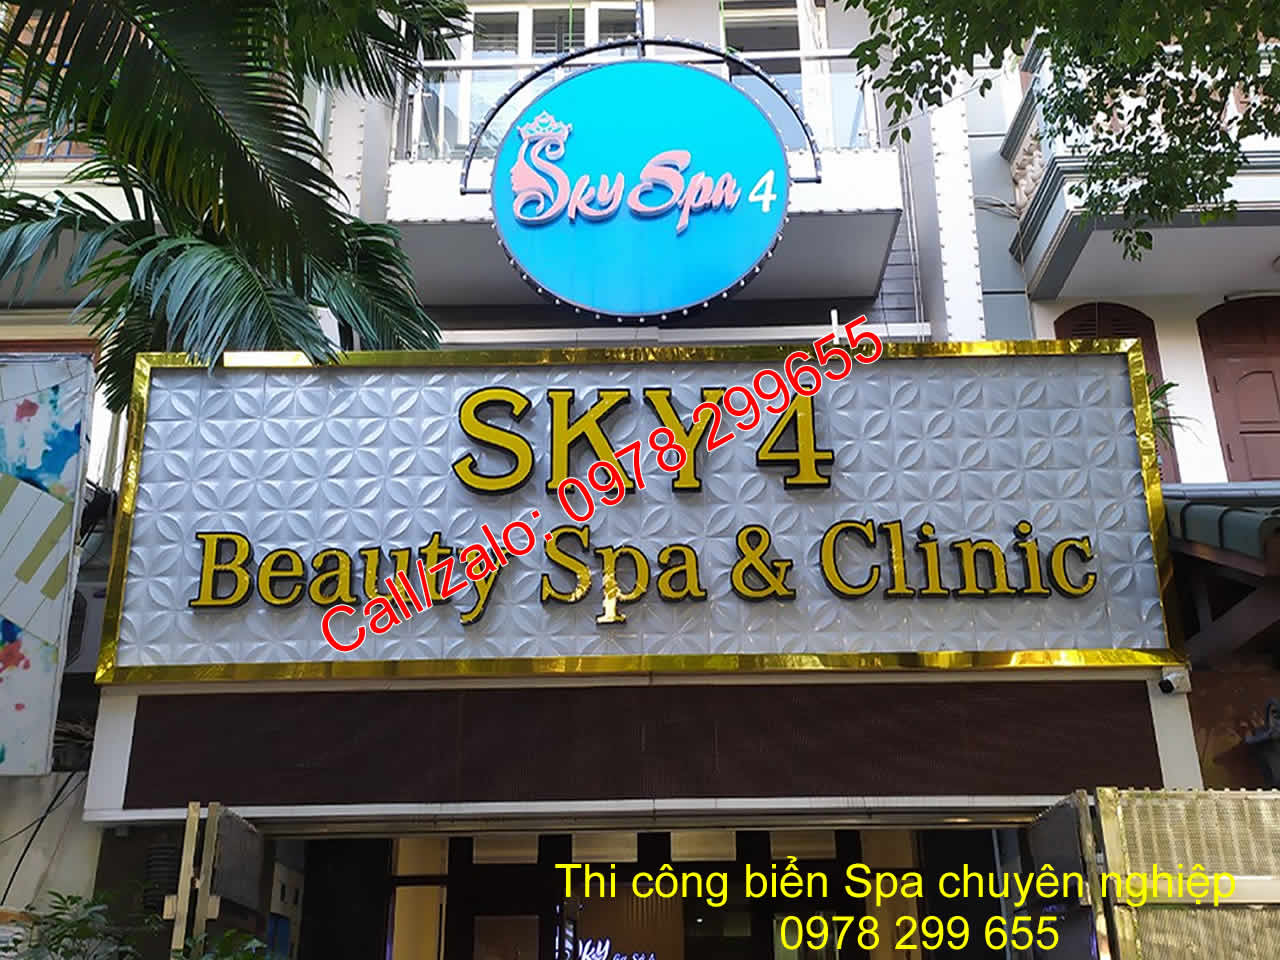 Biển quảng cáo beauty spa